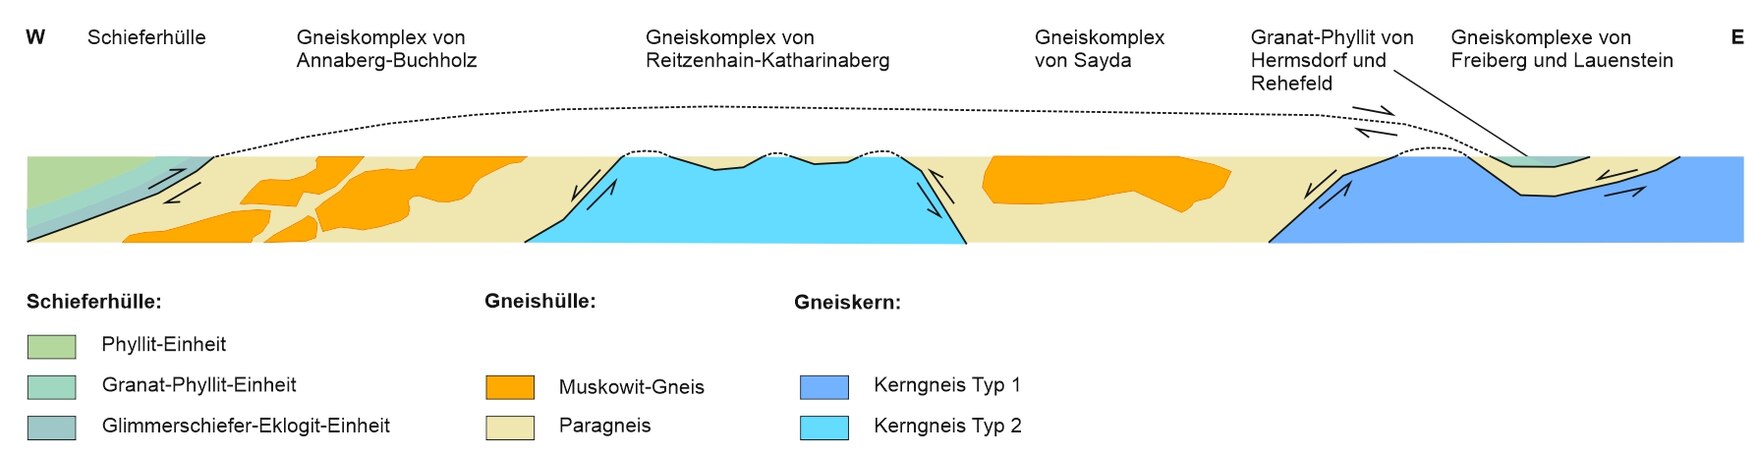 Profilschnitt durch die wichtigsten Struktureinheiten des Erzgebirges von West nach Ost.